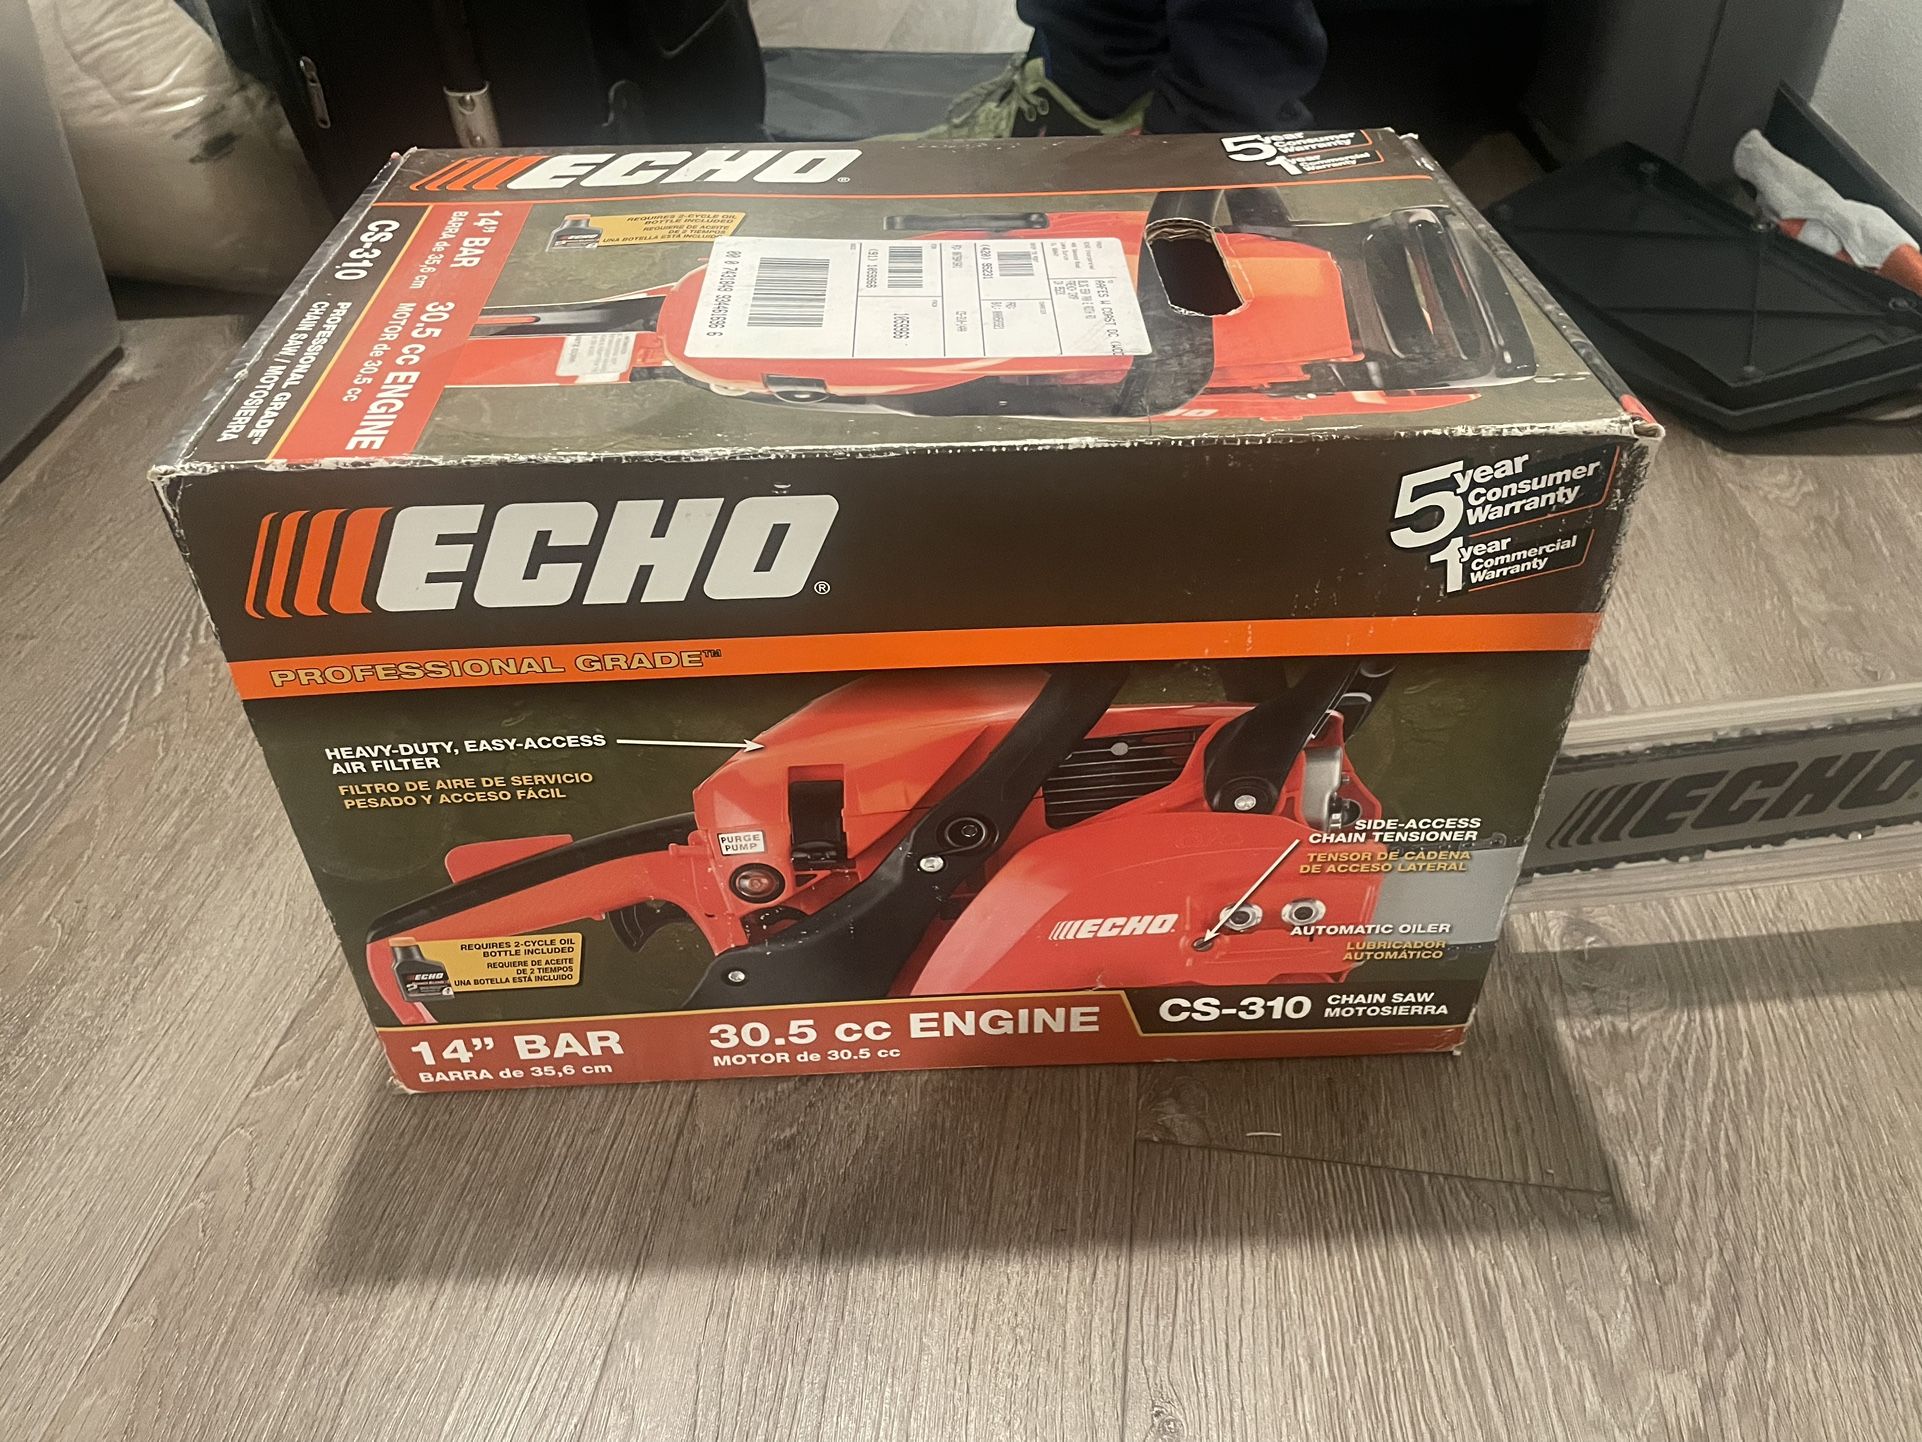 Echo 14” Bar 30.5 cc Engine